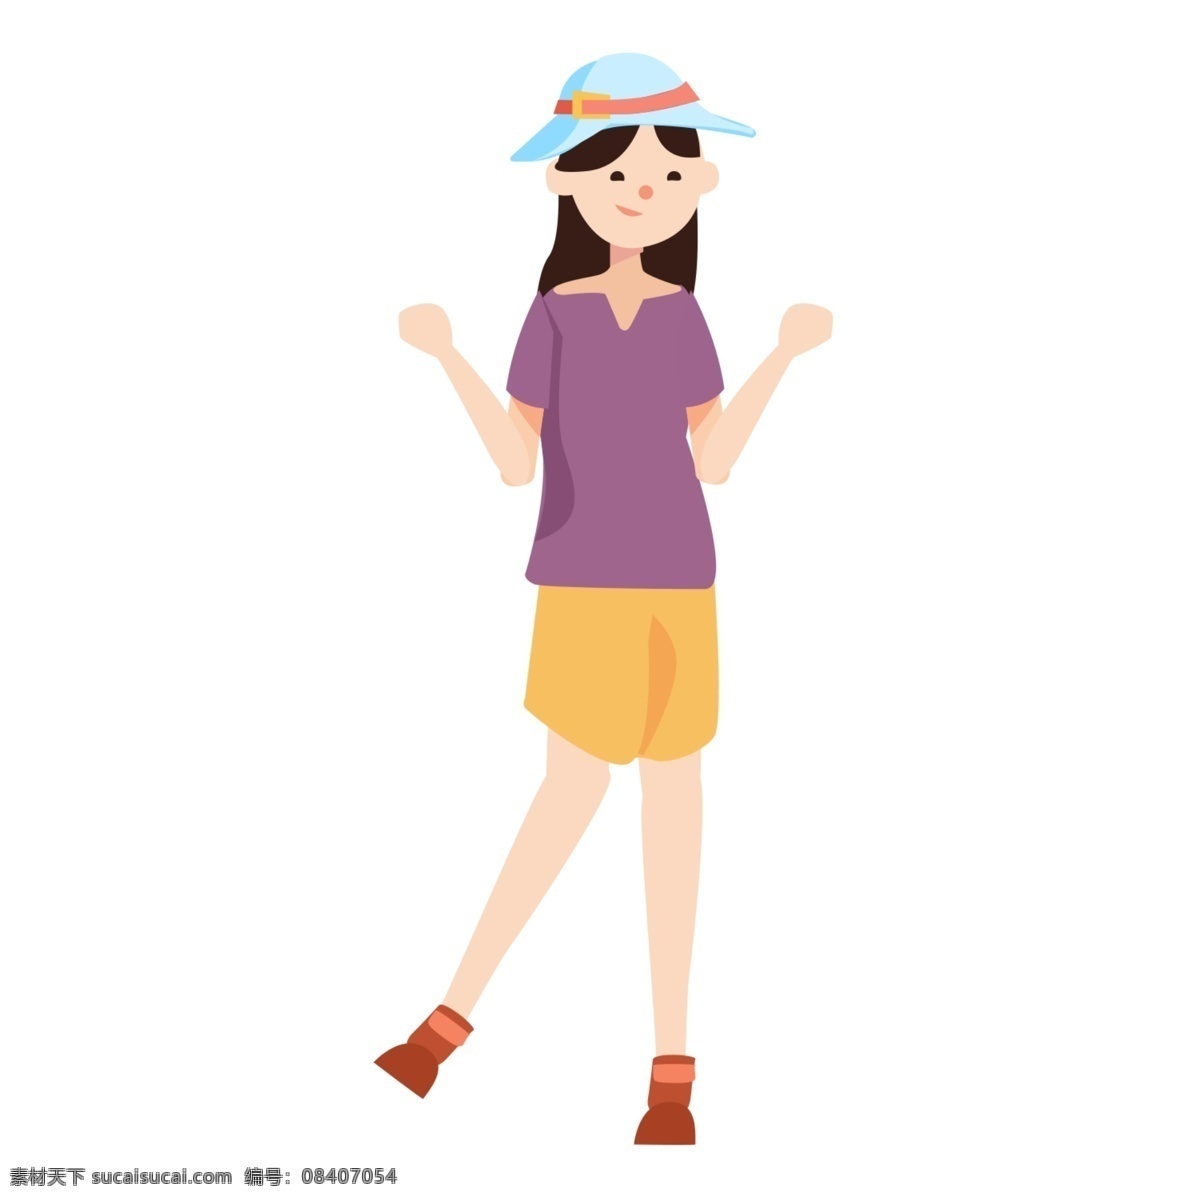 小女孩 紫色 上衣 手绘 休闲度假 欢快 动作 草帽 透明 背景 紫色上衣 黄色短裤 欢快动作 透明背景 双手举起